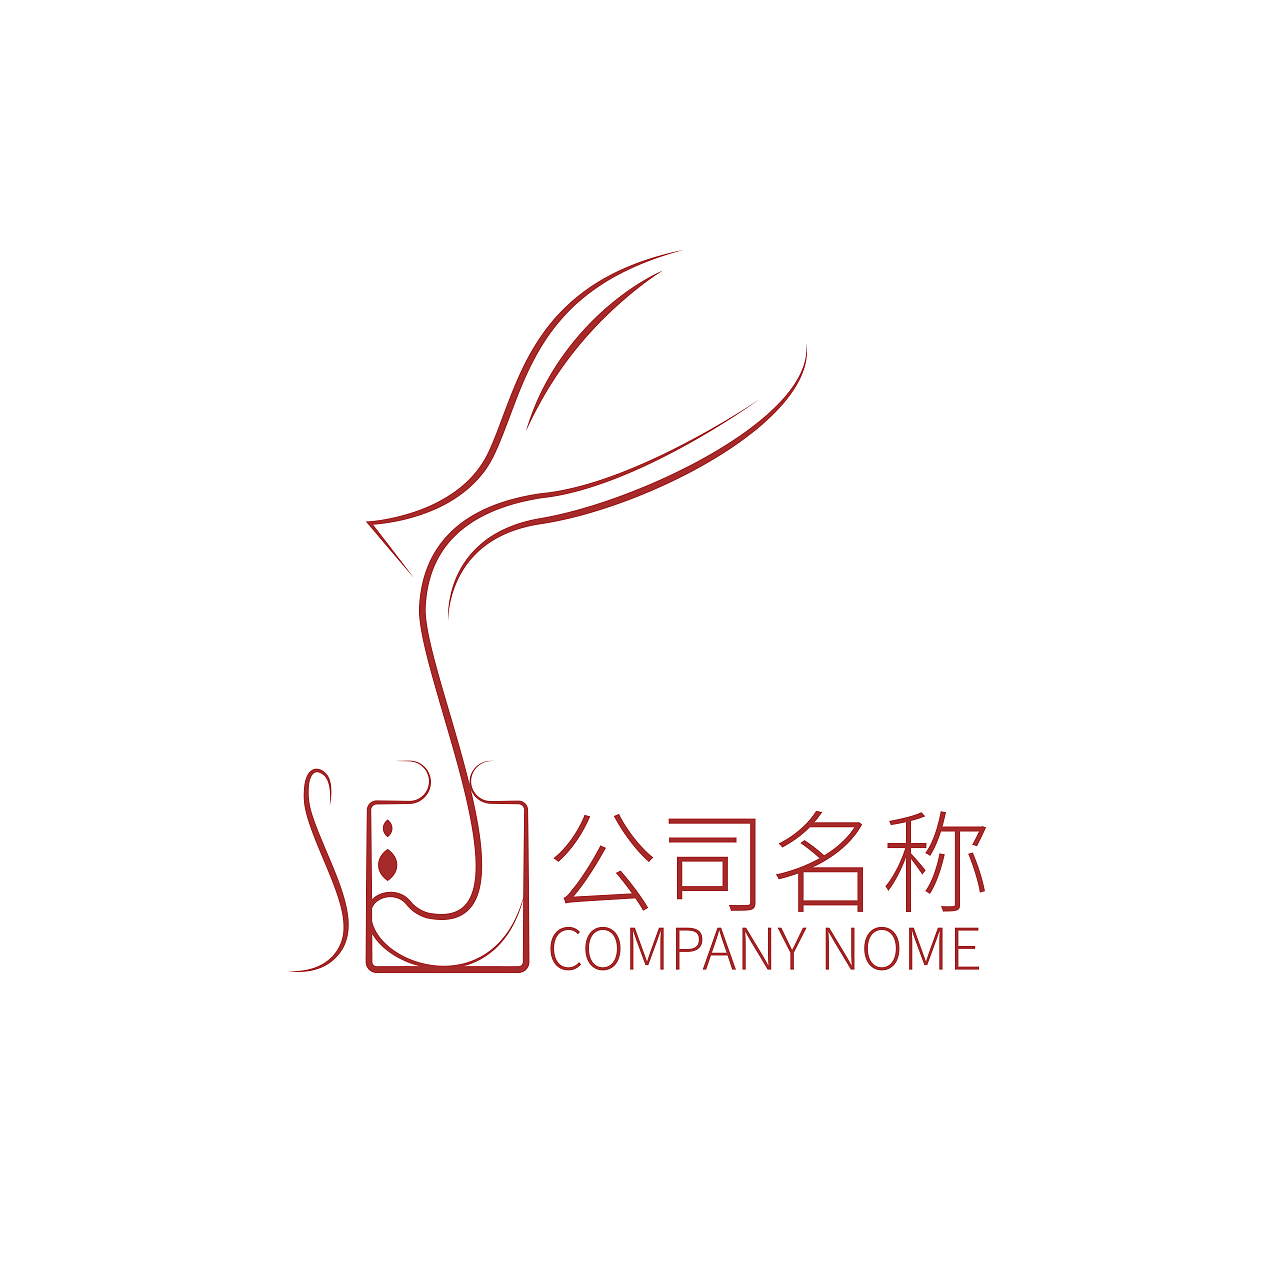 红色 线条酒馆酒吧 酒馆 标志logo酒logo